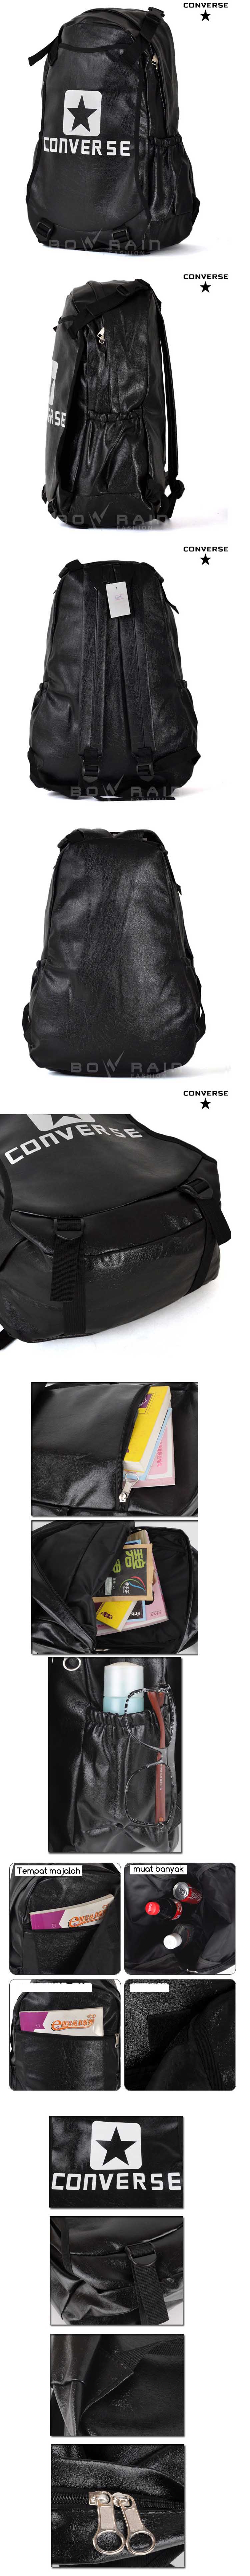 jual tas ransel kulit merk converse, temukan koleksi tas ransel pria branded terlengkap dan terbaru dengan bahan berkualitas di store.pakaianfashionpria.com